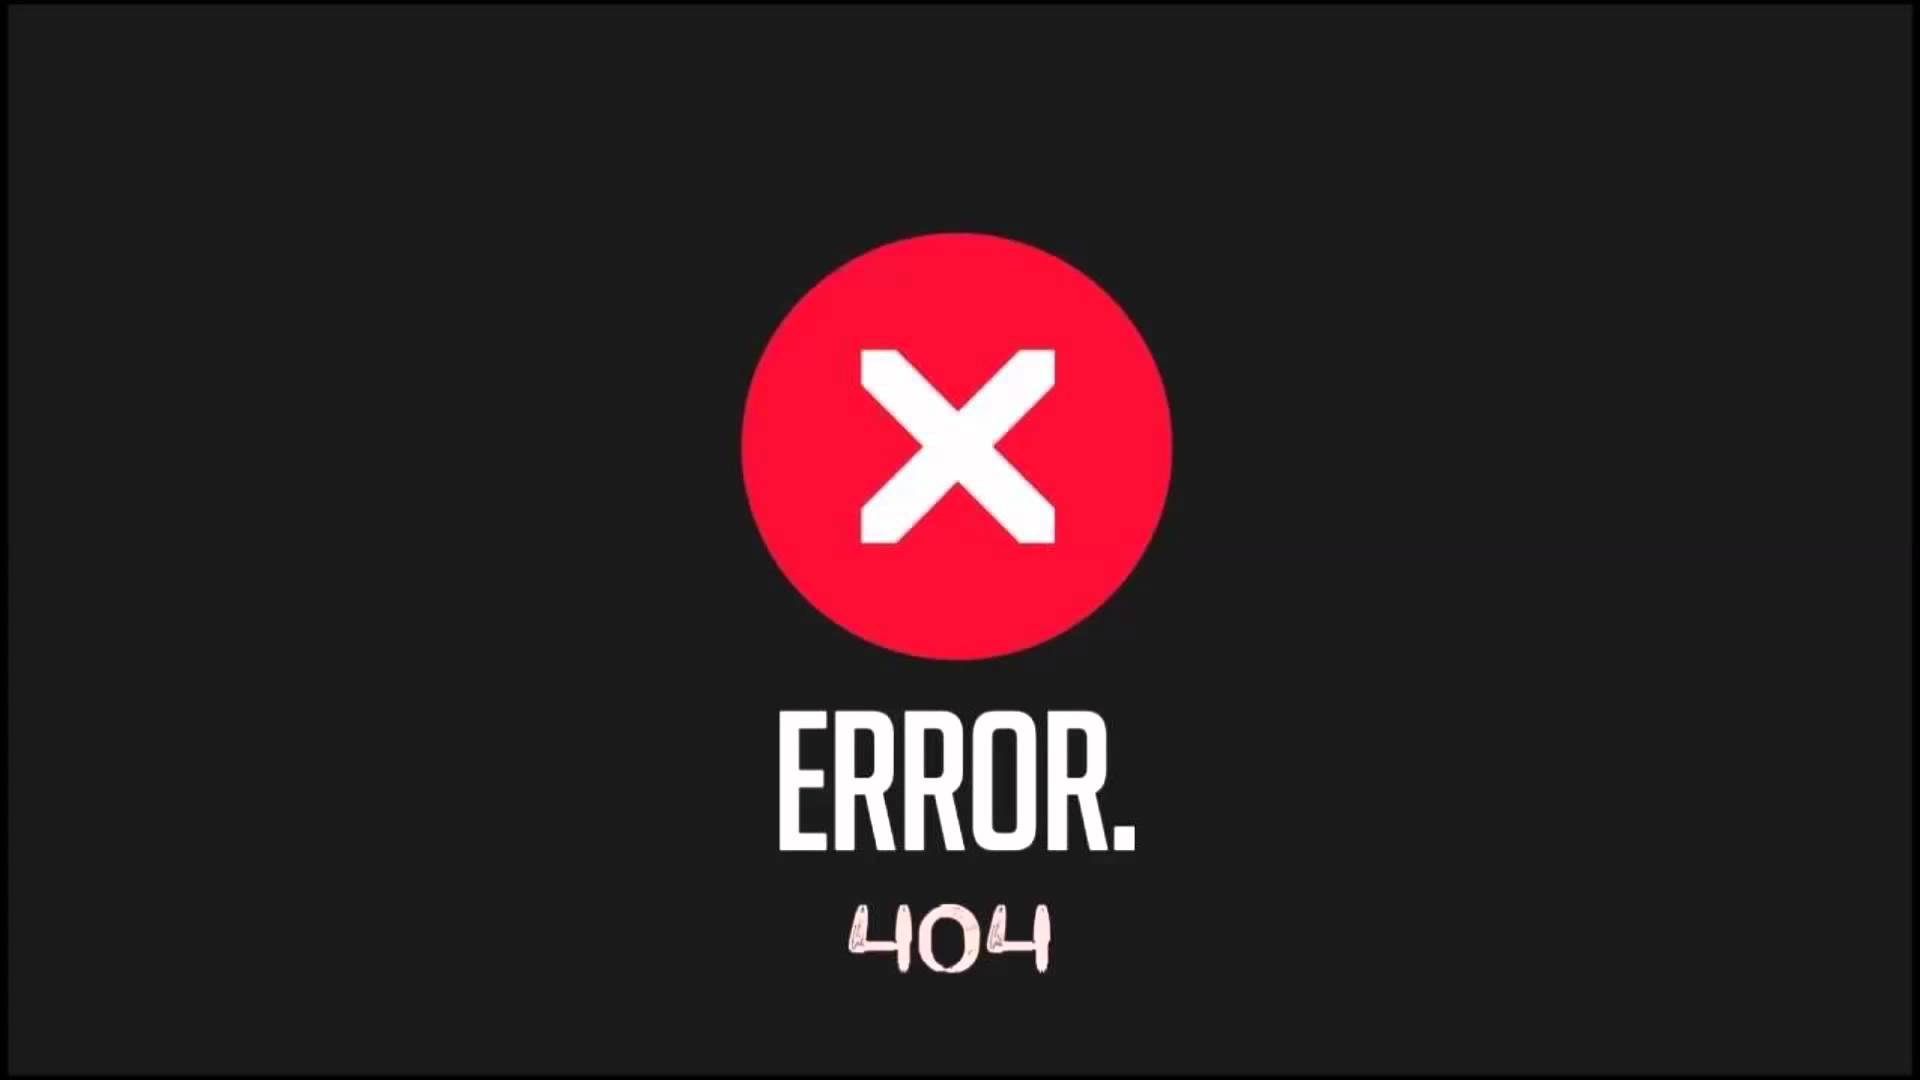 Hướng dẫn xử lý lỗi 404 (Page Not Found) trong Java và PHP